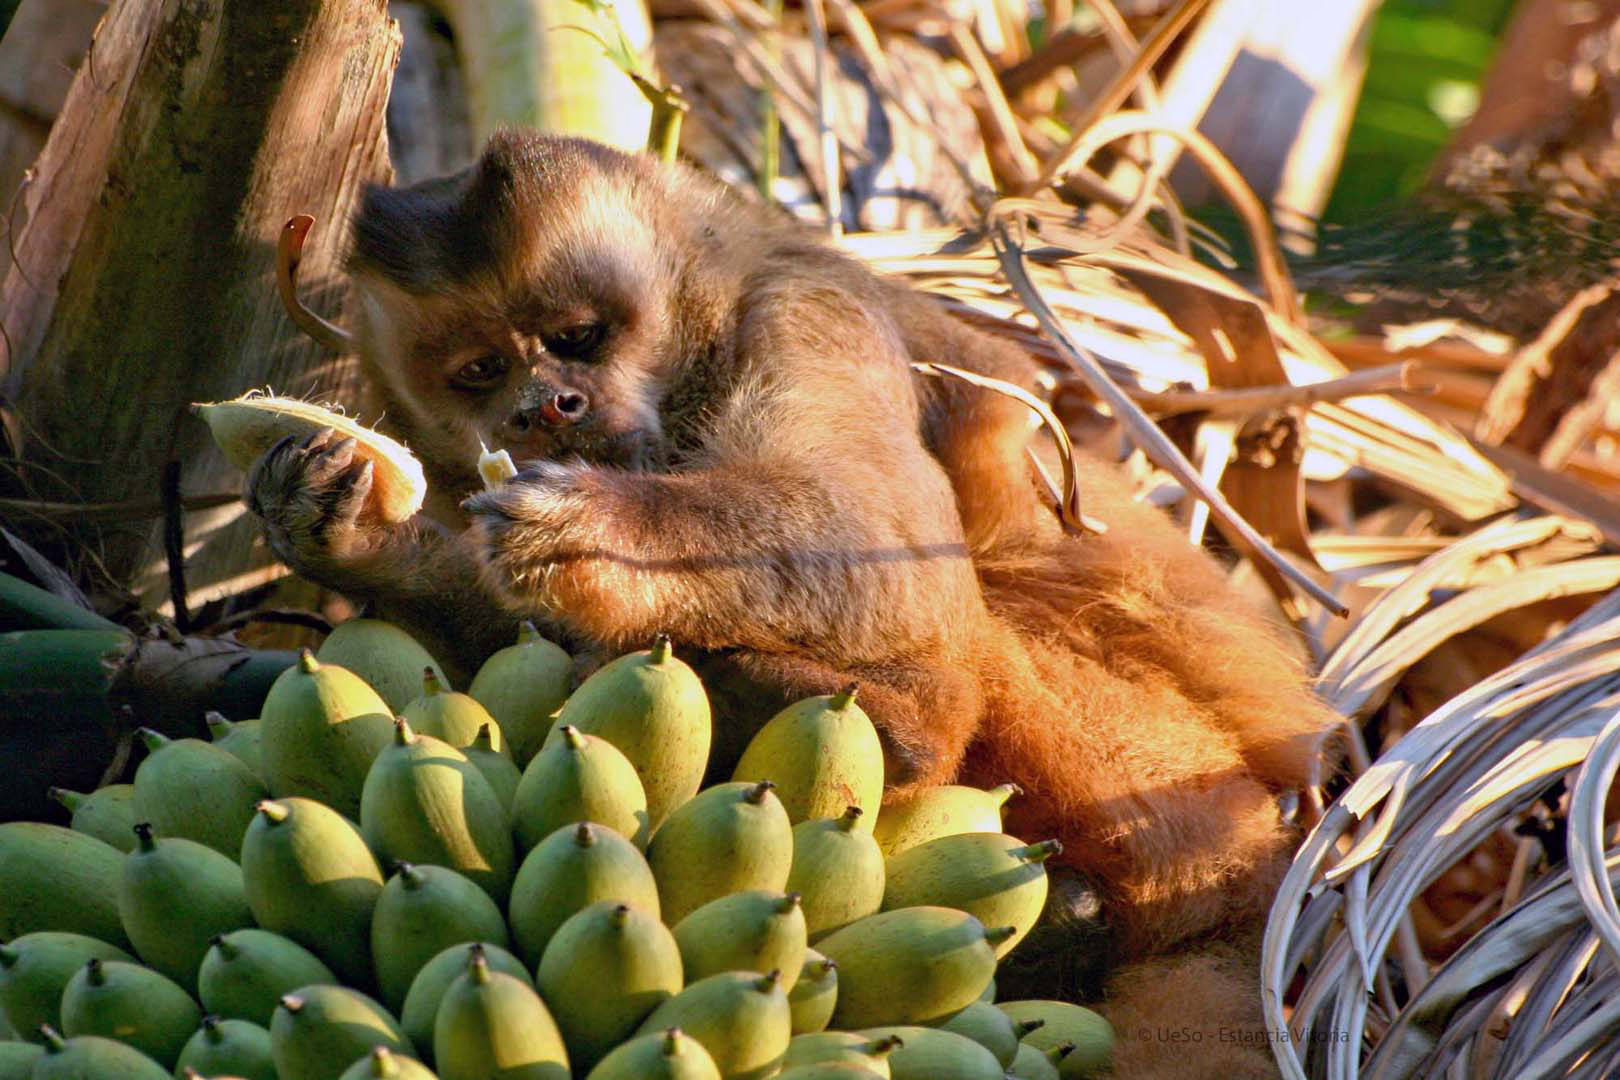 Capuchin monkey eats bananas